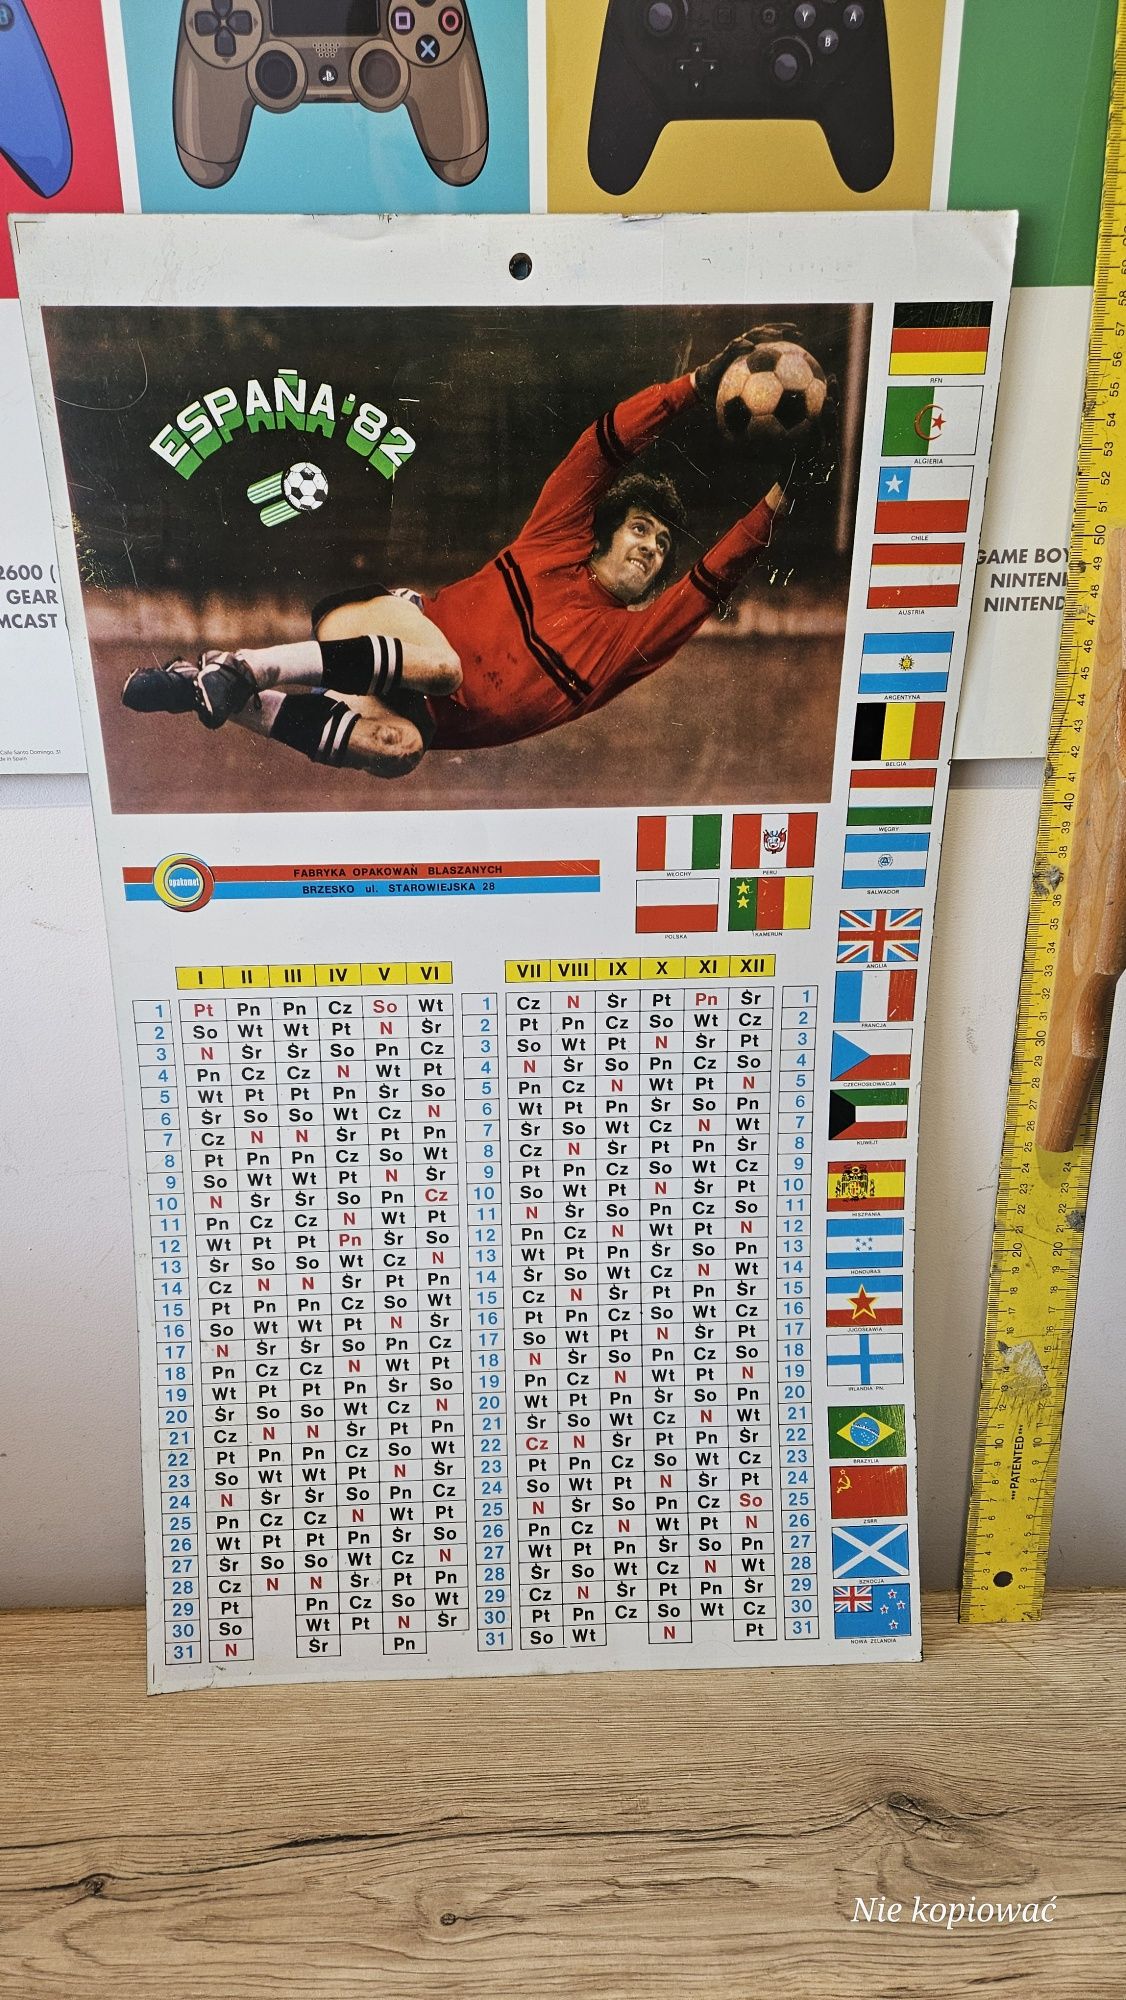 Pamiątka piłkarska duży kalendarz espana 82 blaszany mundial